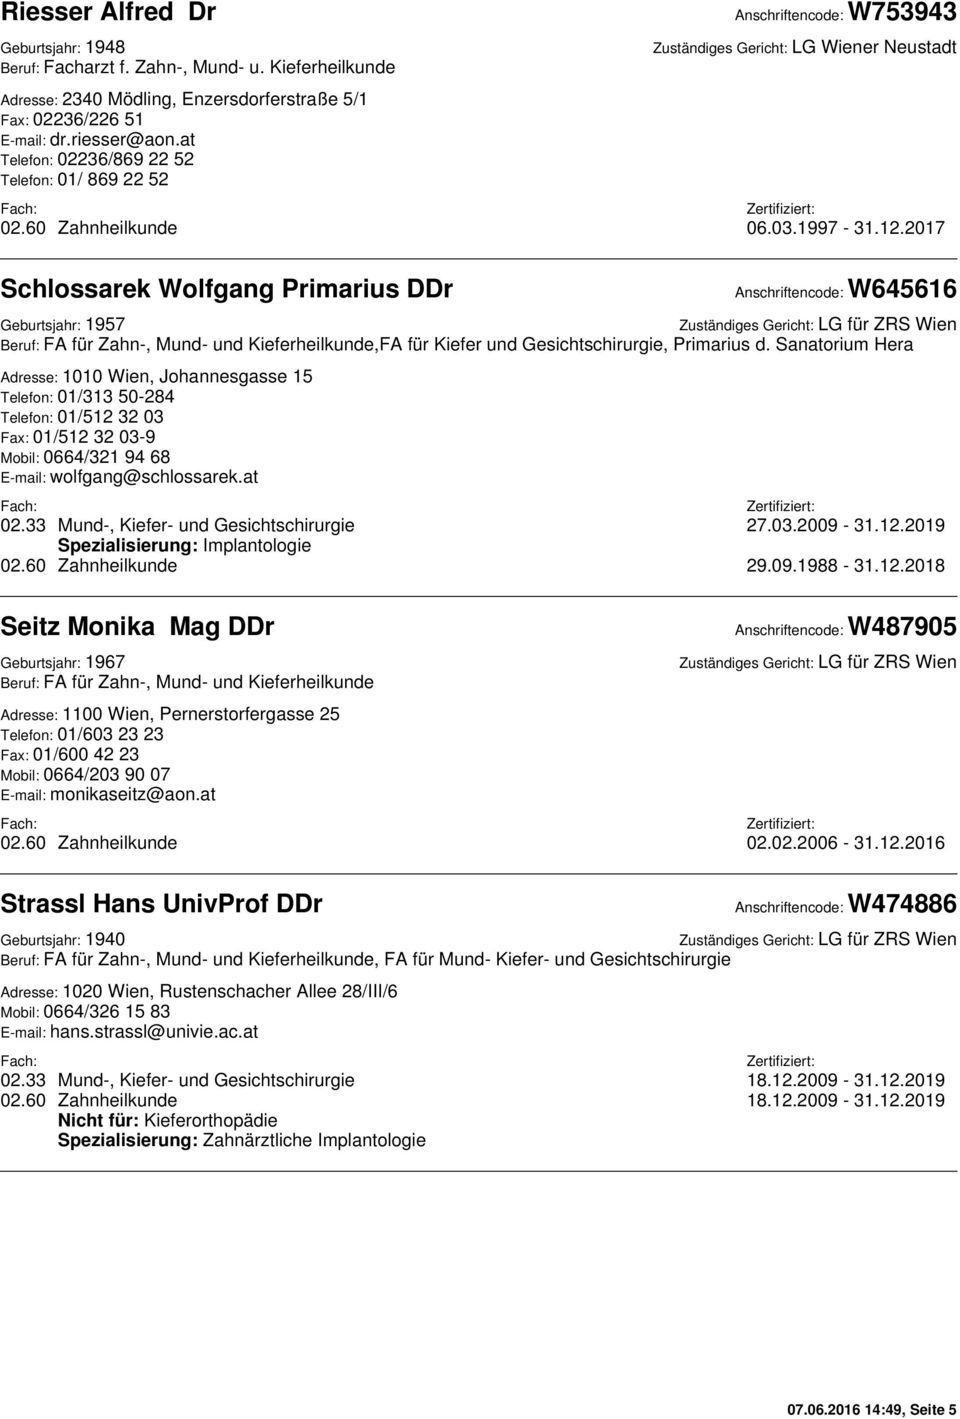 2017 Schlossarek Wolfgang Primarius DDr Anschriftencode: W645616 Geburtsjahr: 1957,FA für Kiefer und Gesichtschirurgie, Primarius d.